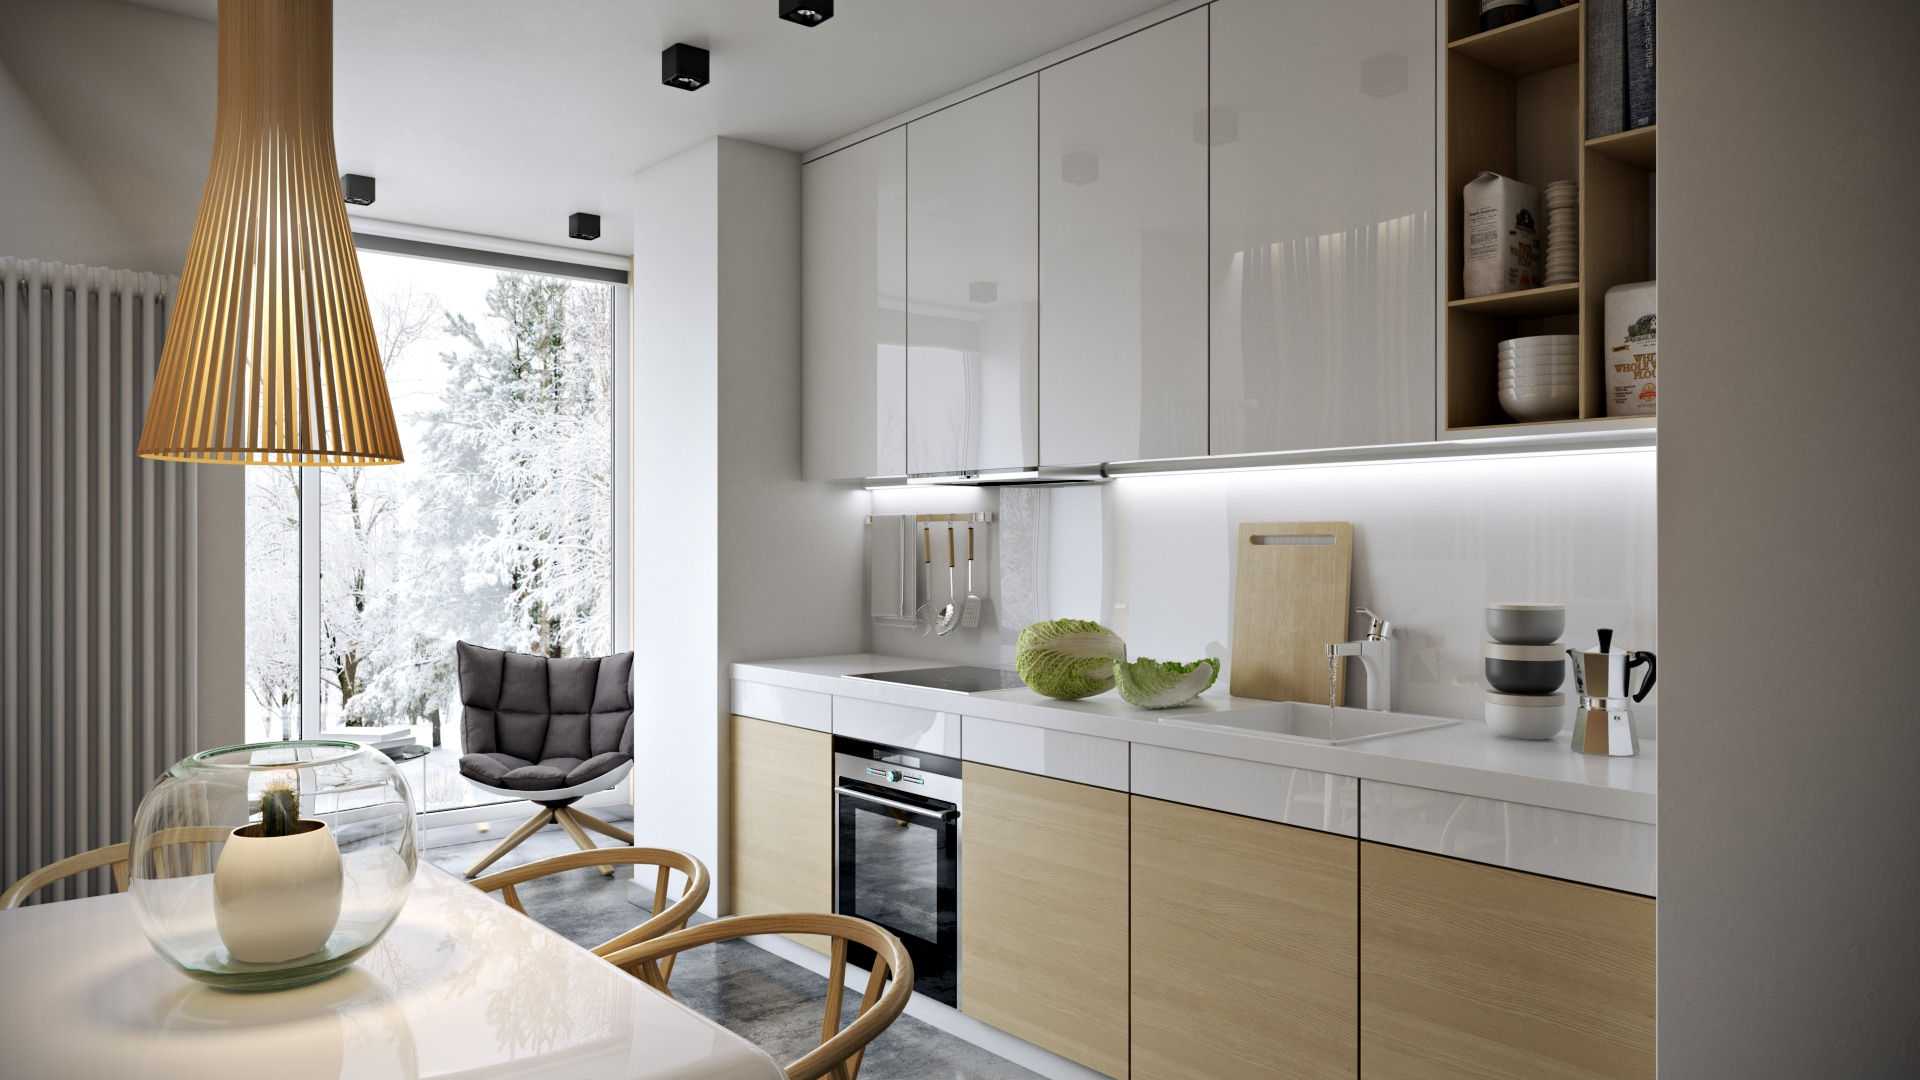 Обои для маленькой кухни: какие выбрать под дизайн небольшого помещения